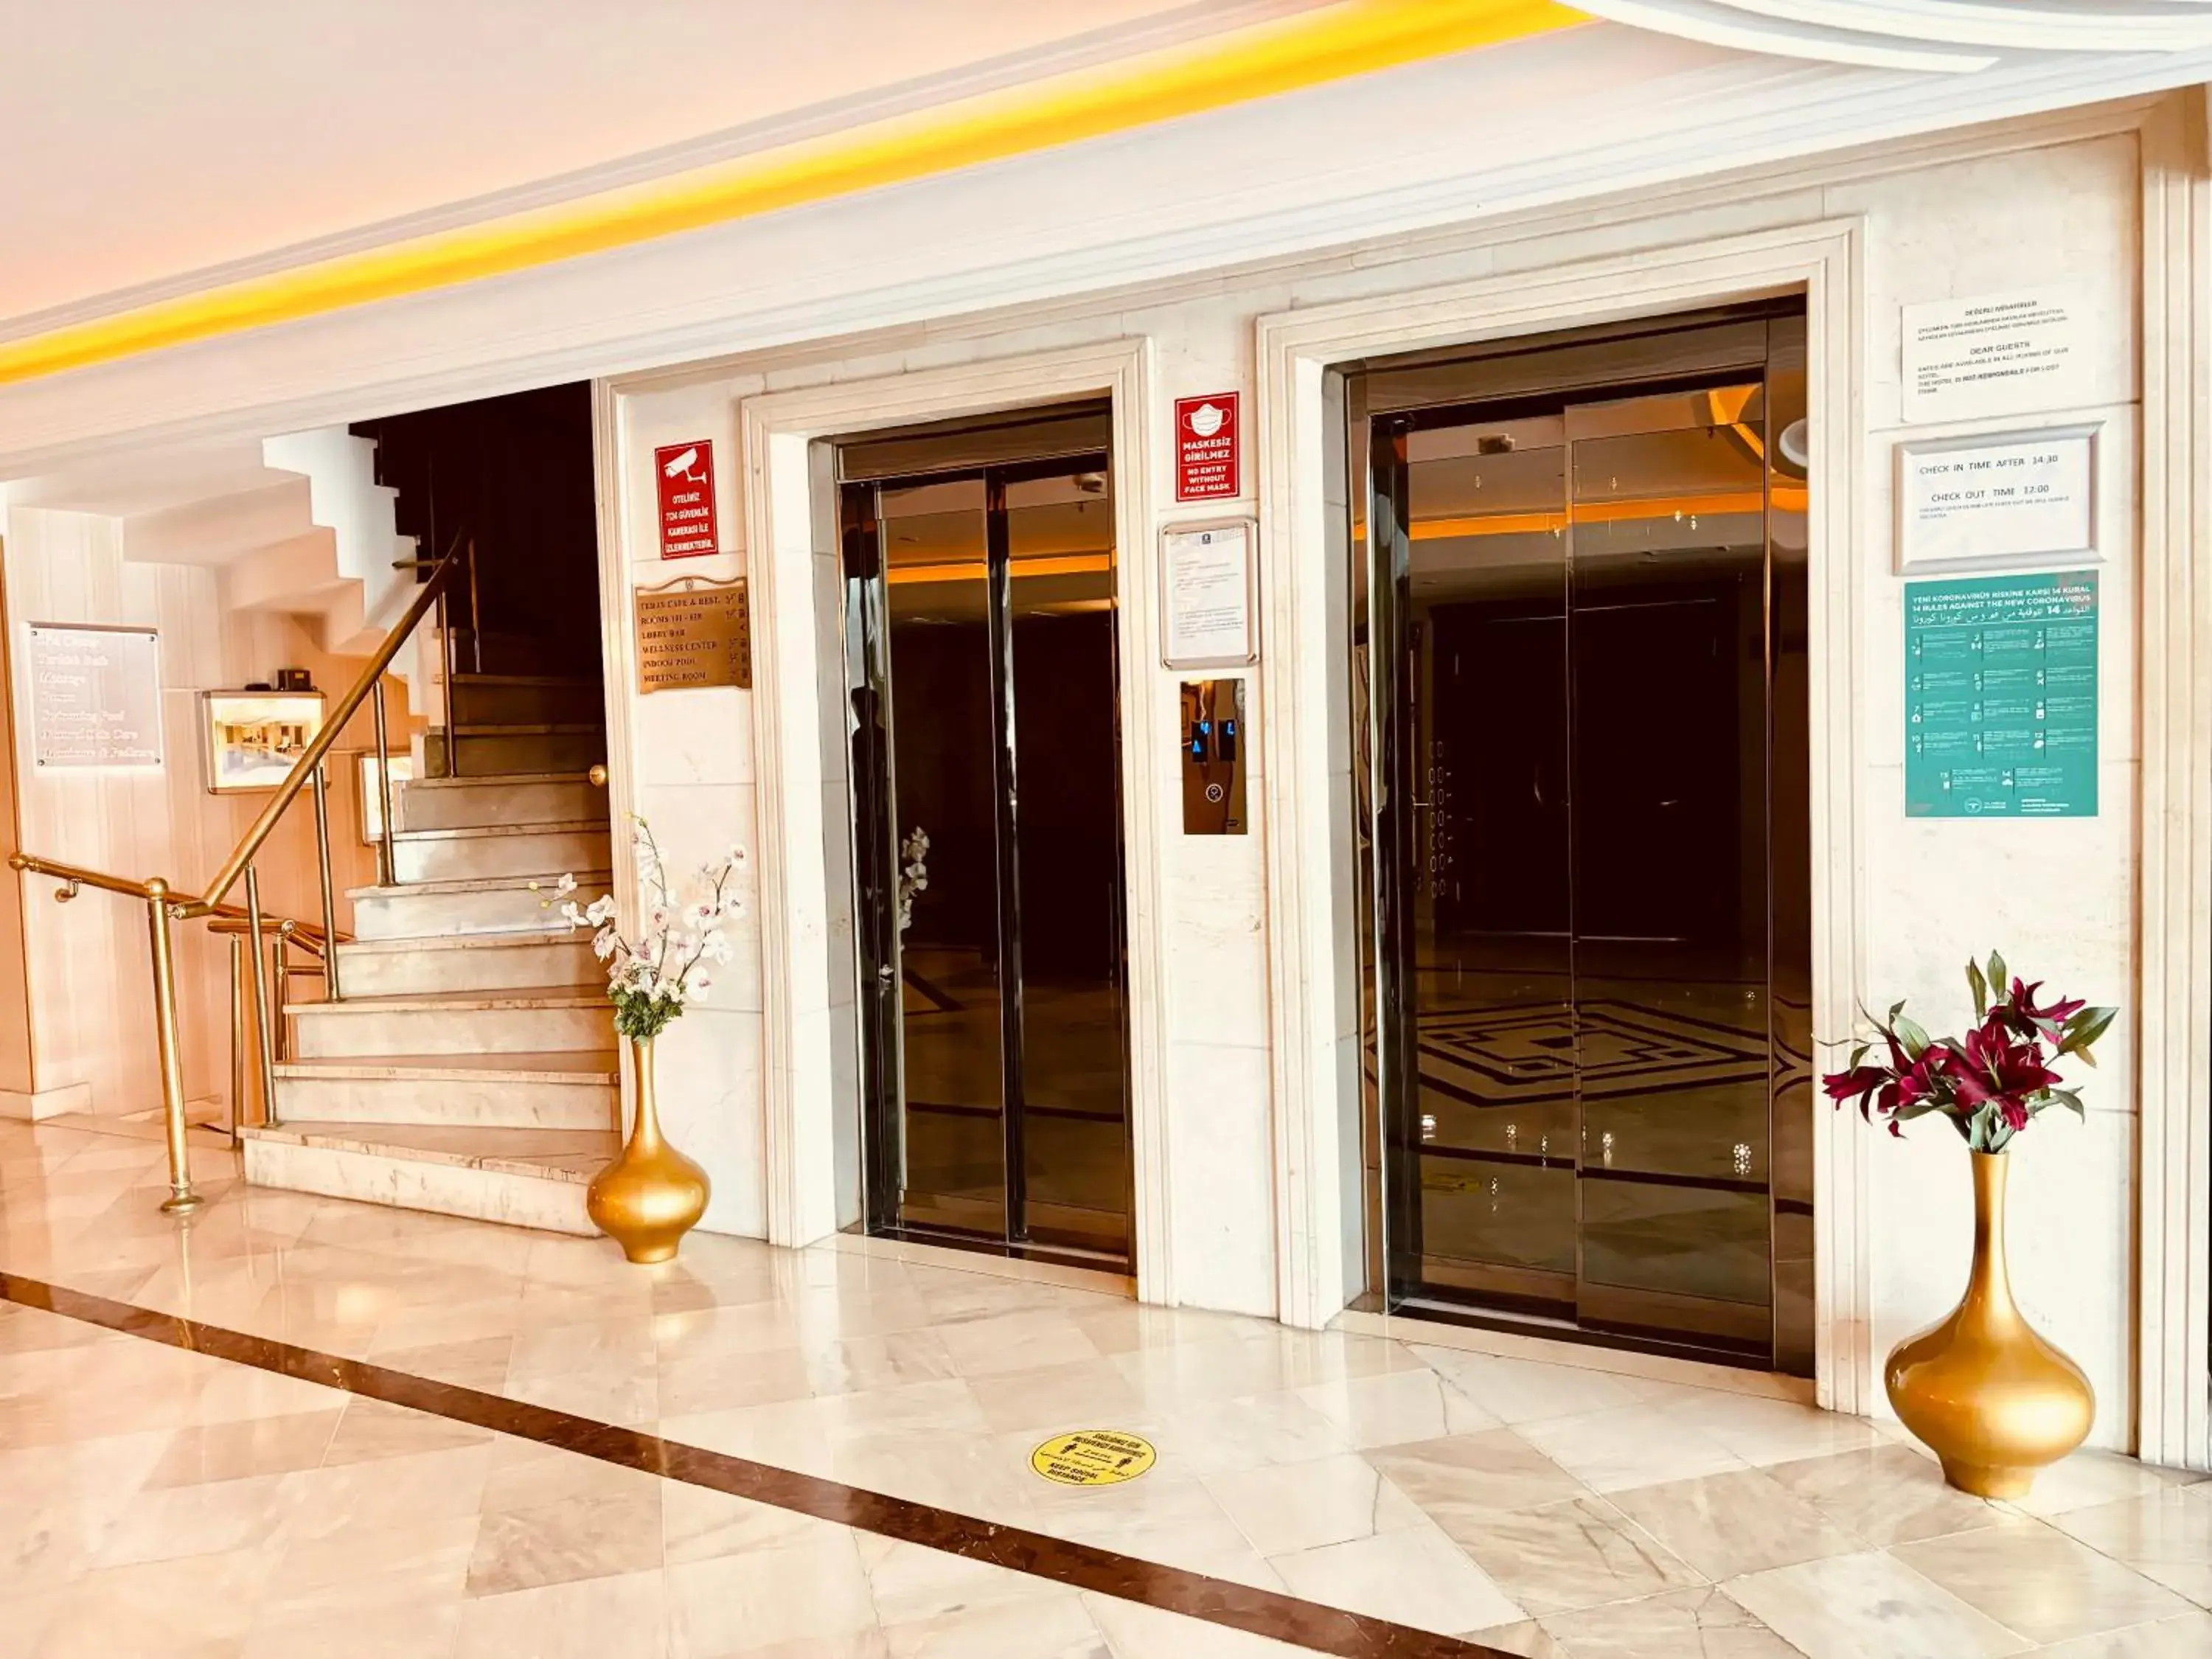 Lobby or reception in Askoc Hotel & SPA